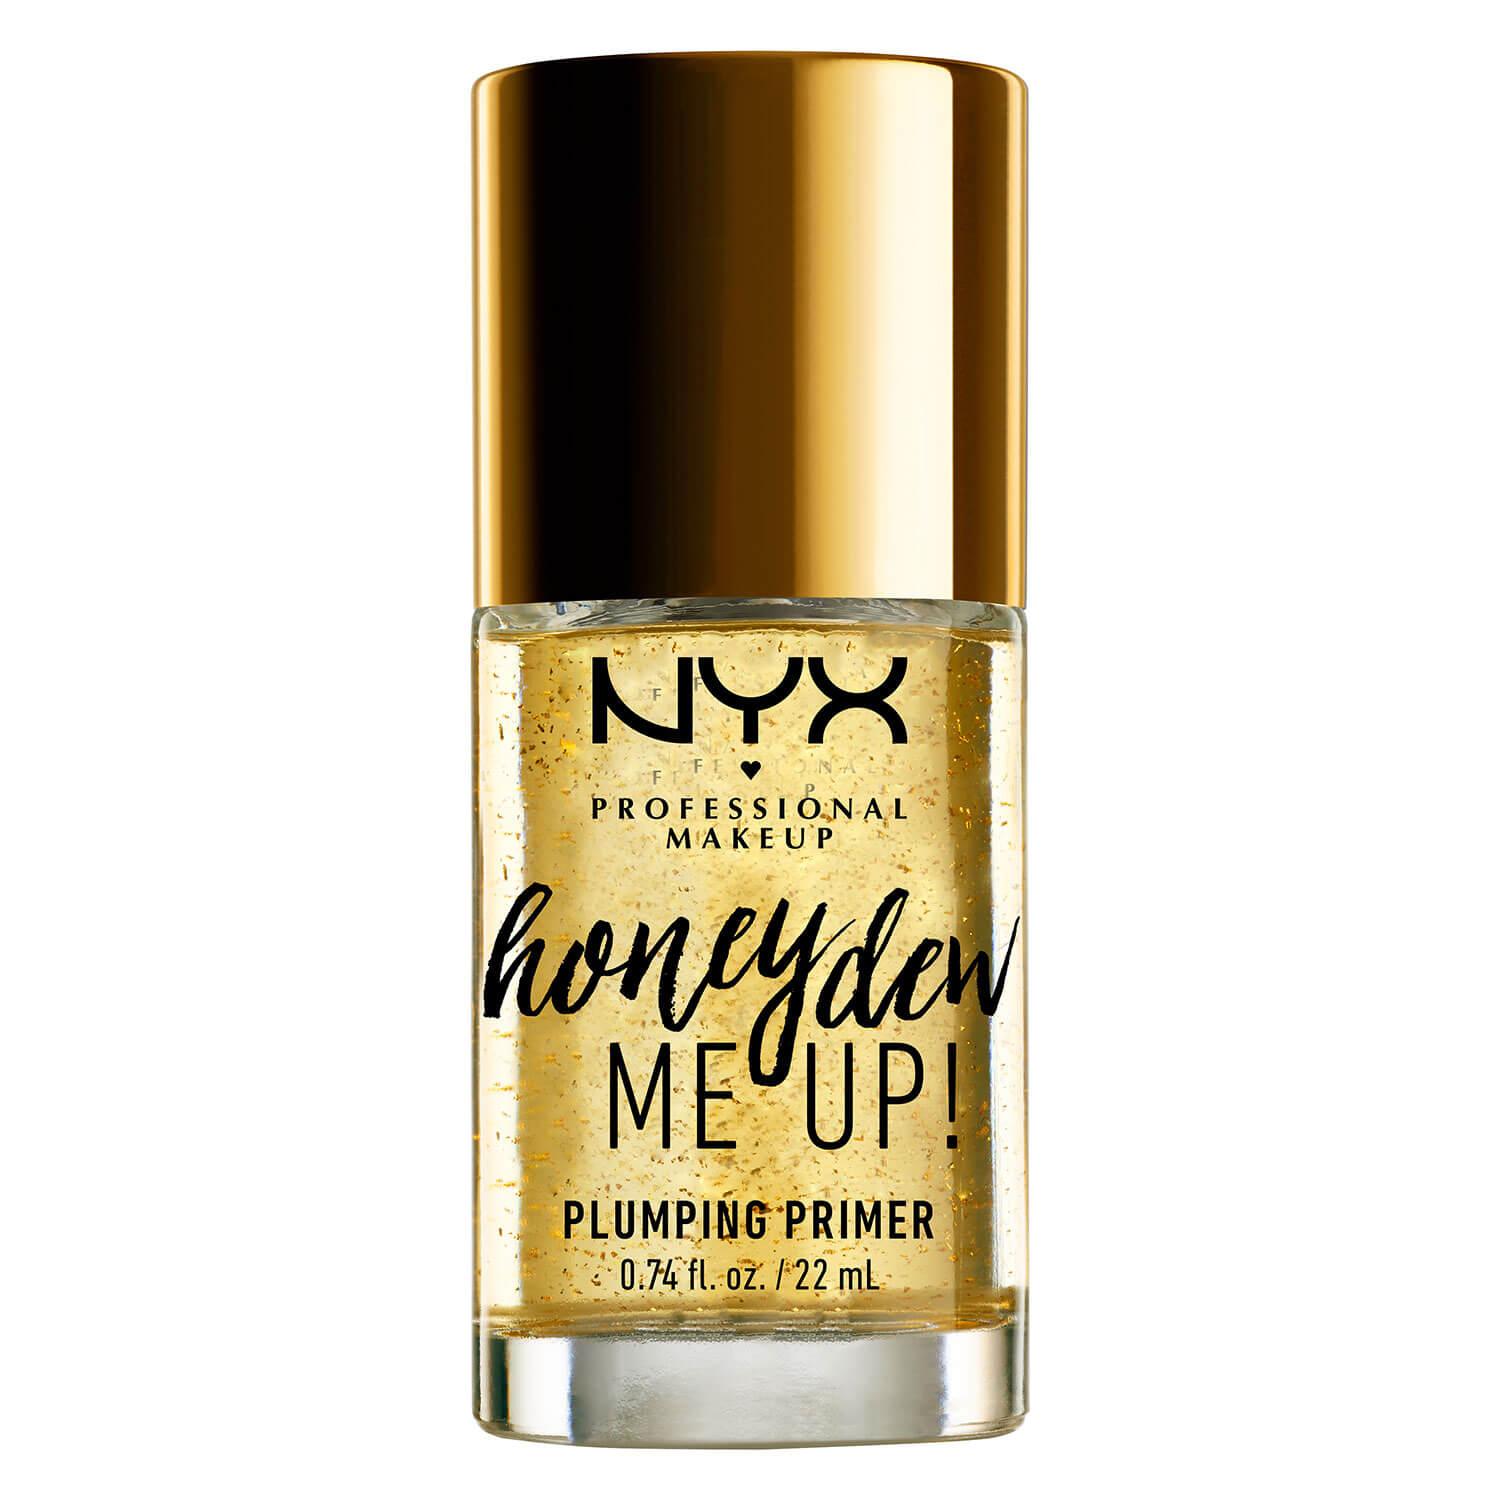 NYX Primer - Honey Dew Me Up Plumping Primer